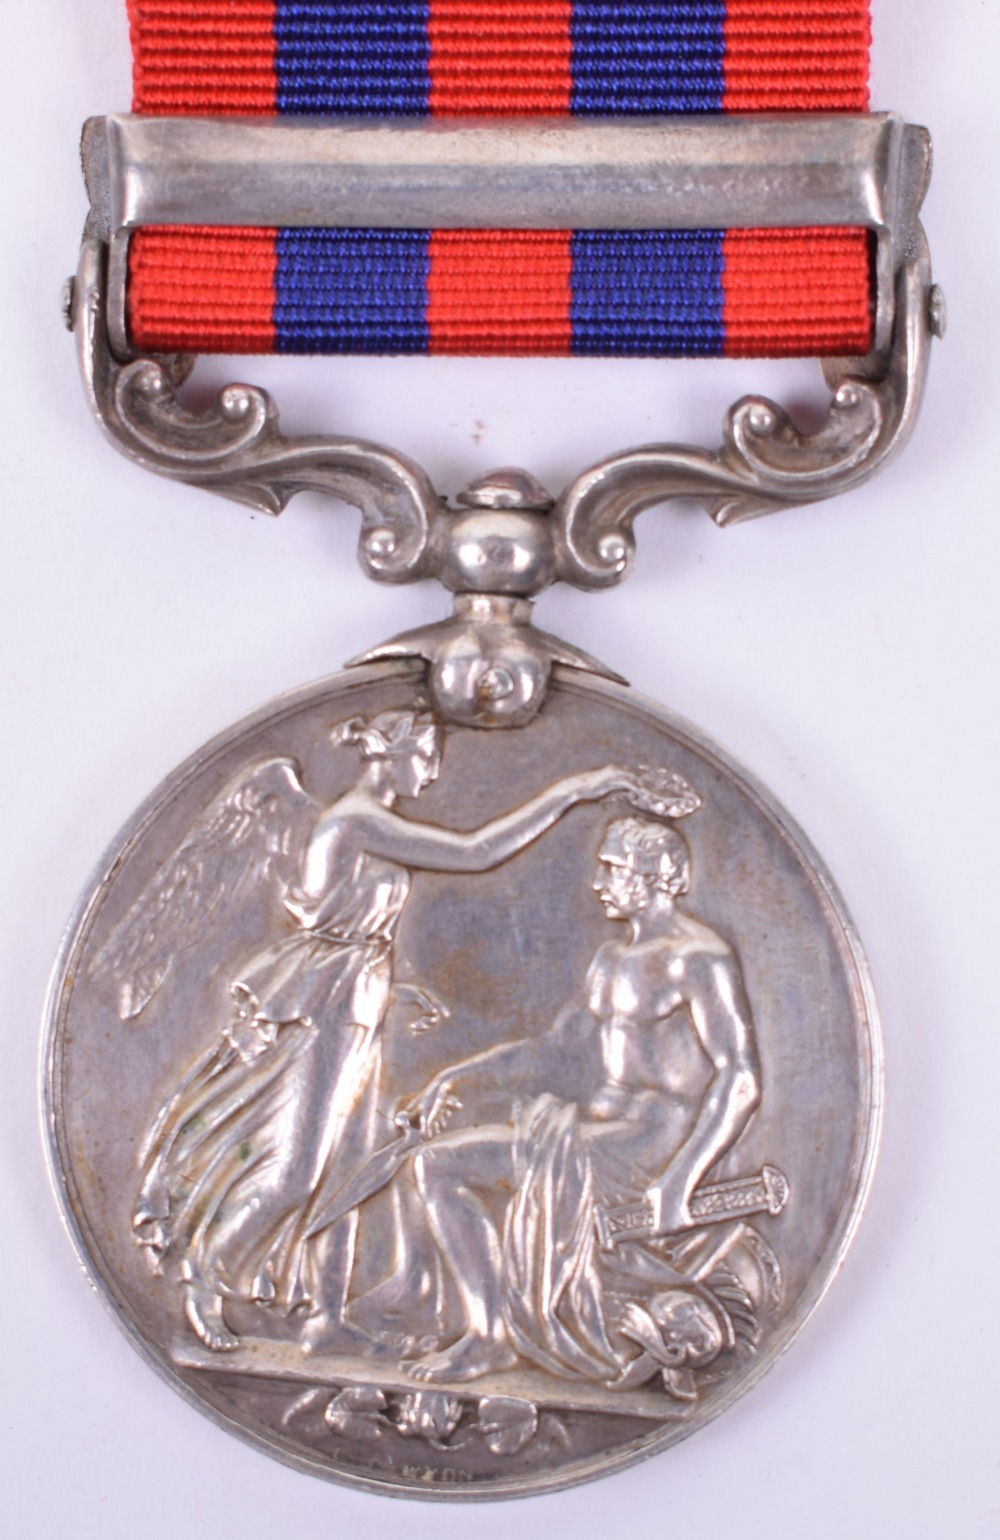 Indian General Service Medal 1854-95 2nd Battalion Seaforth Highlanders - Image 4 of 4